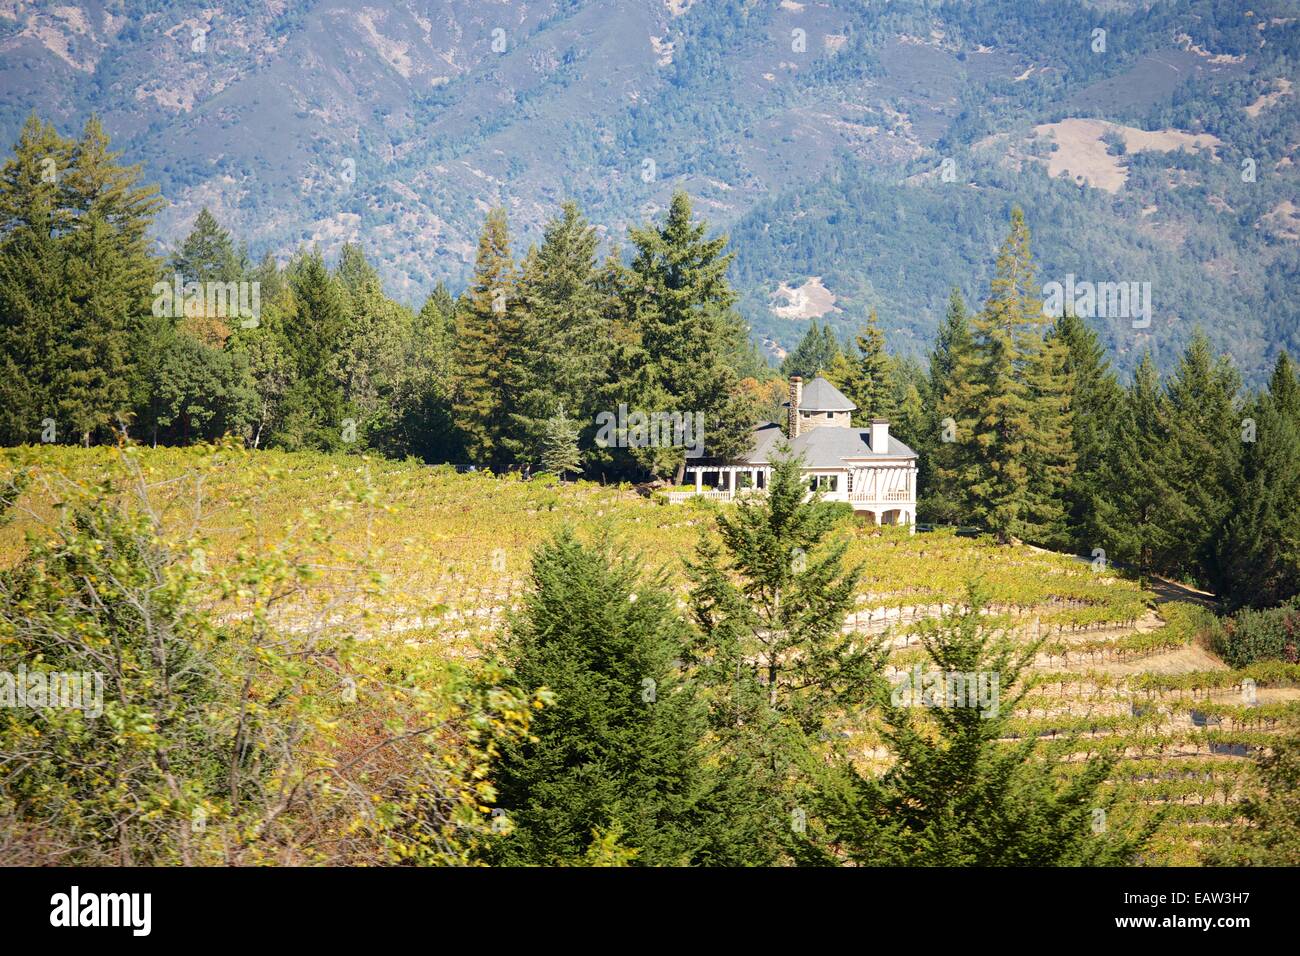 Splendide vedute dei vigneti nella famosa Napa Valley Wine Country nel nord della California, Stati Uniti d'America. Foto Stock